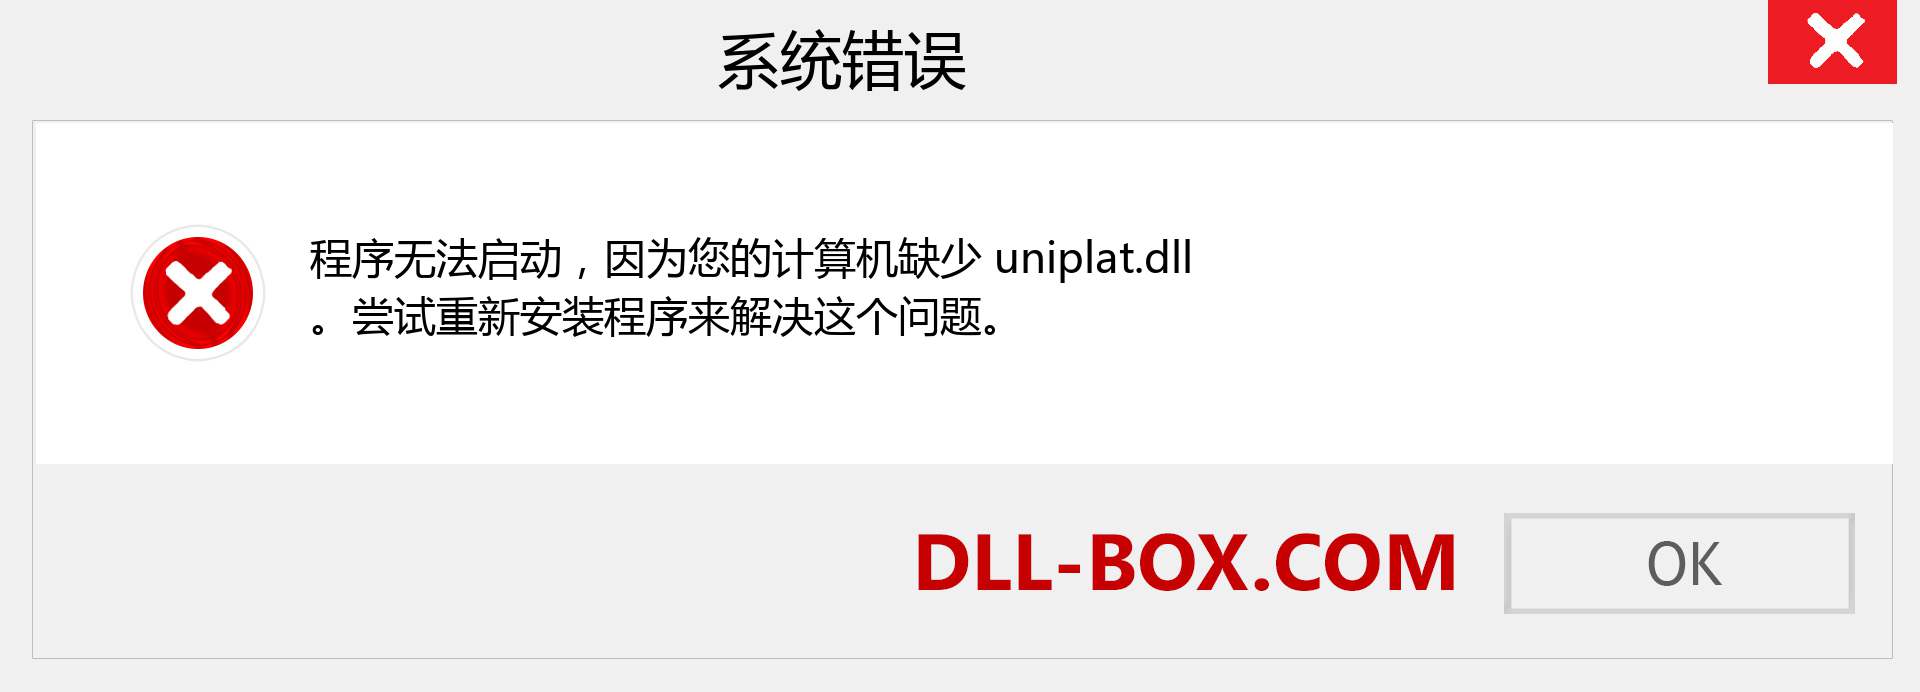 uniplat.dll 文件丢失？。 适用于 Windows 7、8、10 的下载 - 修复 Windows、照片、图像上的 uniplat dll 丢失错误